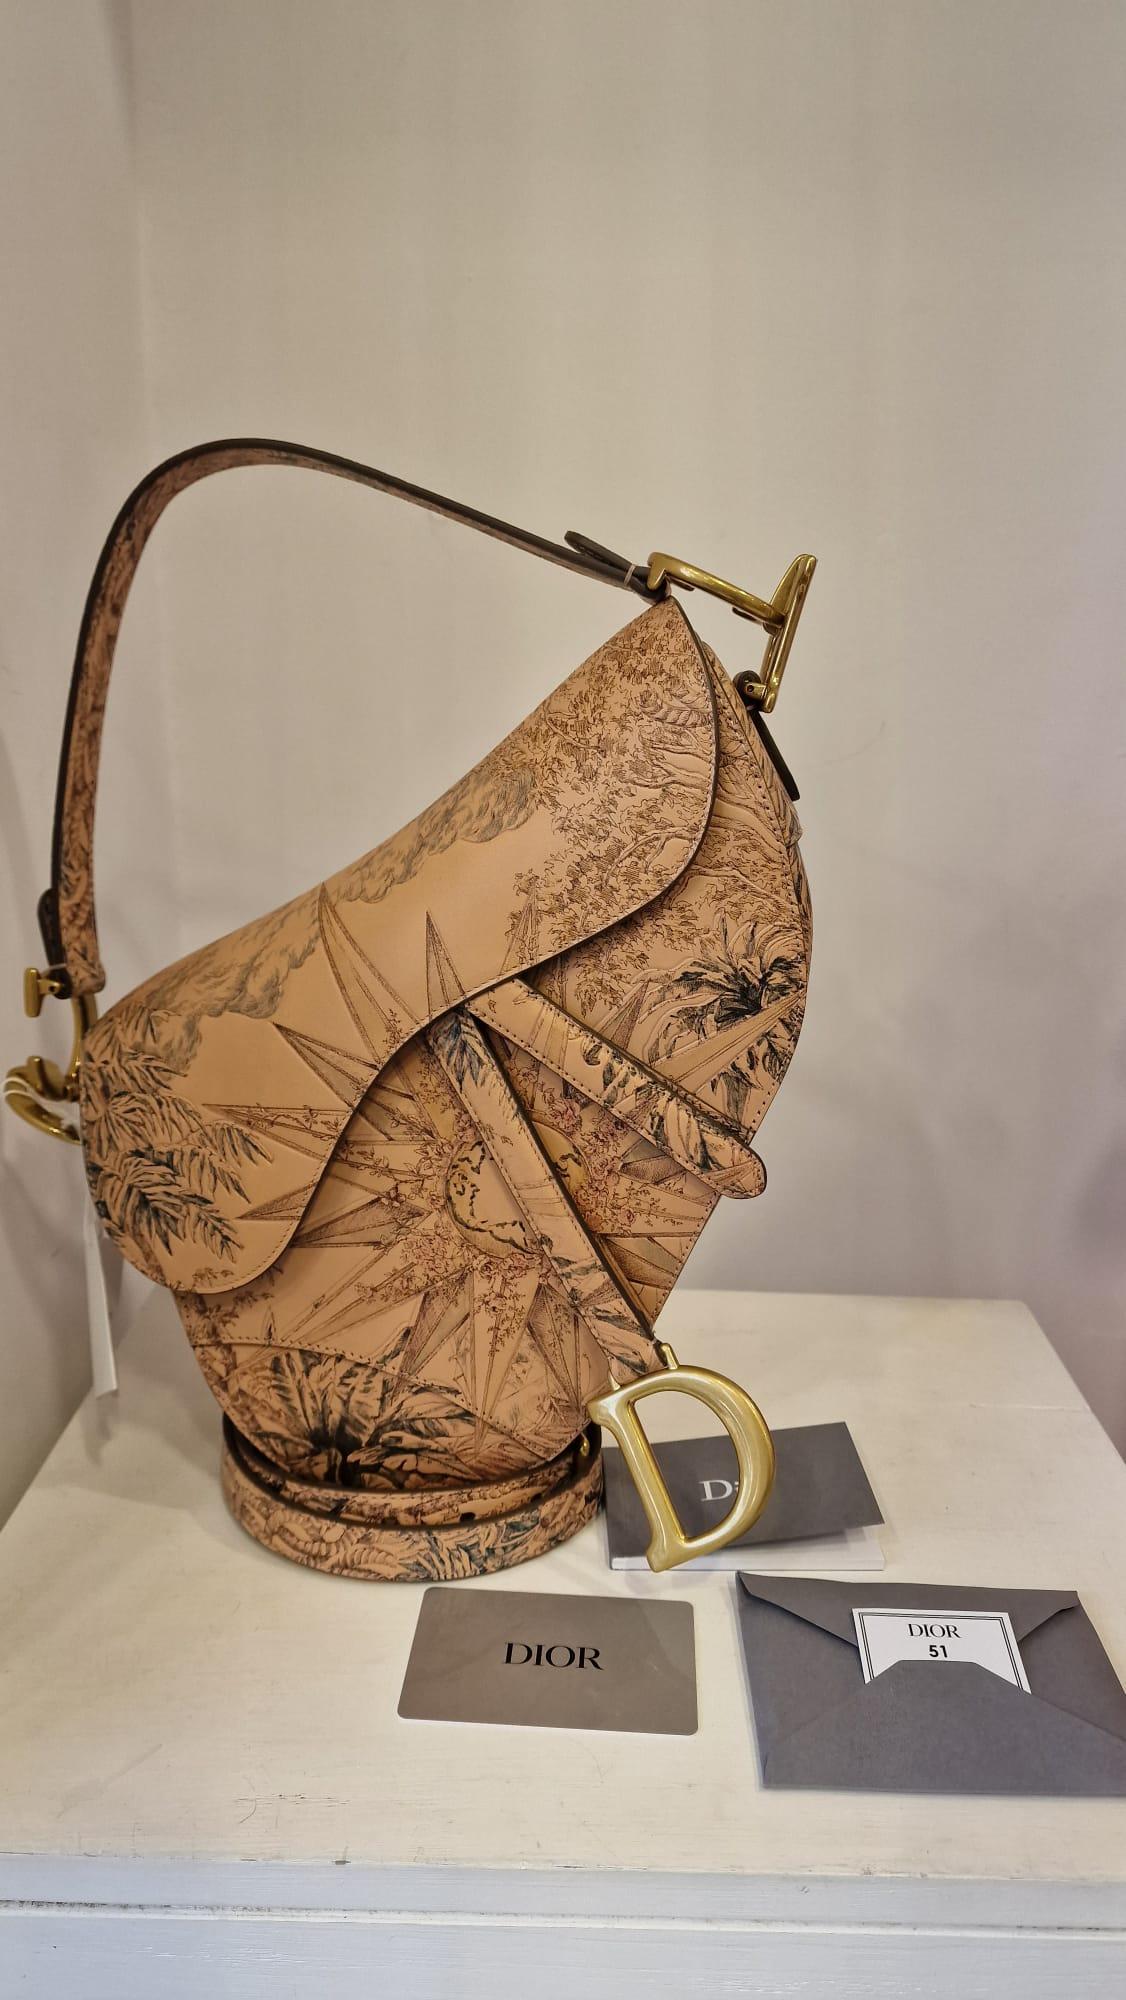 Christian Dior limited edition saddle bag NWOT
Leather saddle bag embellished with sun design
